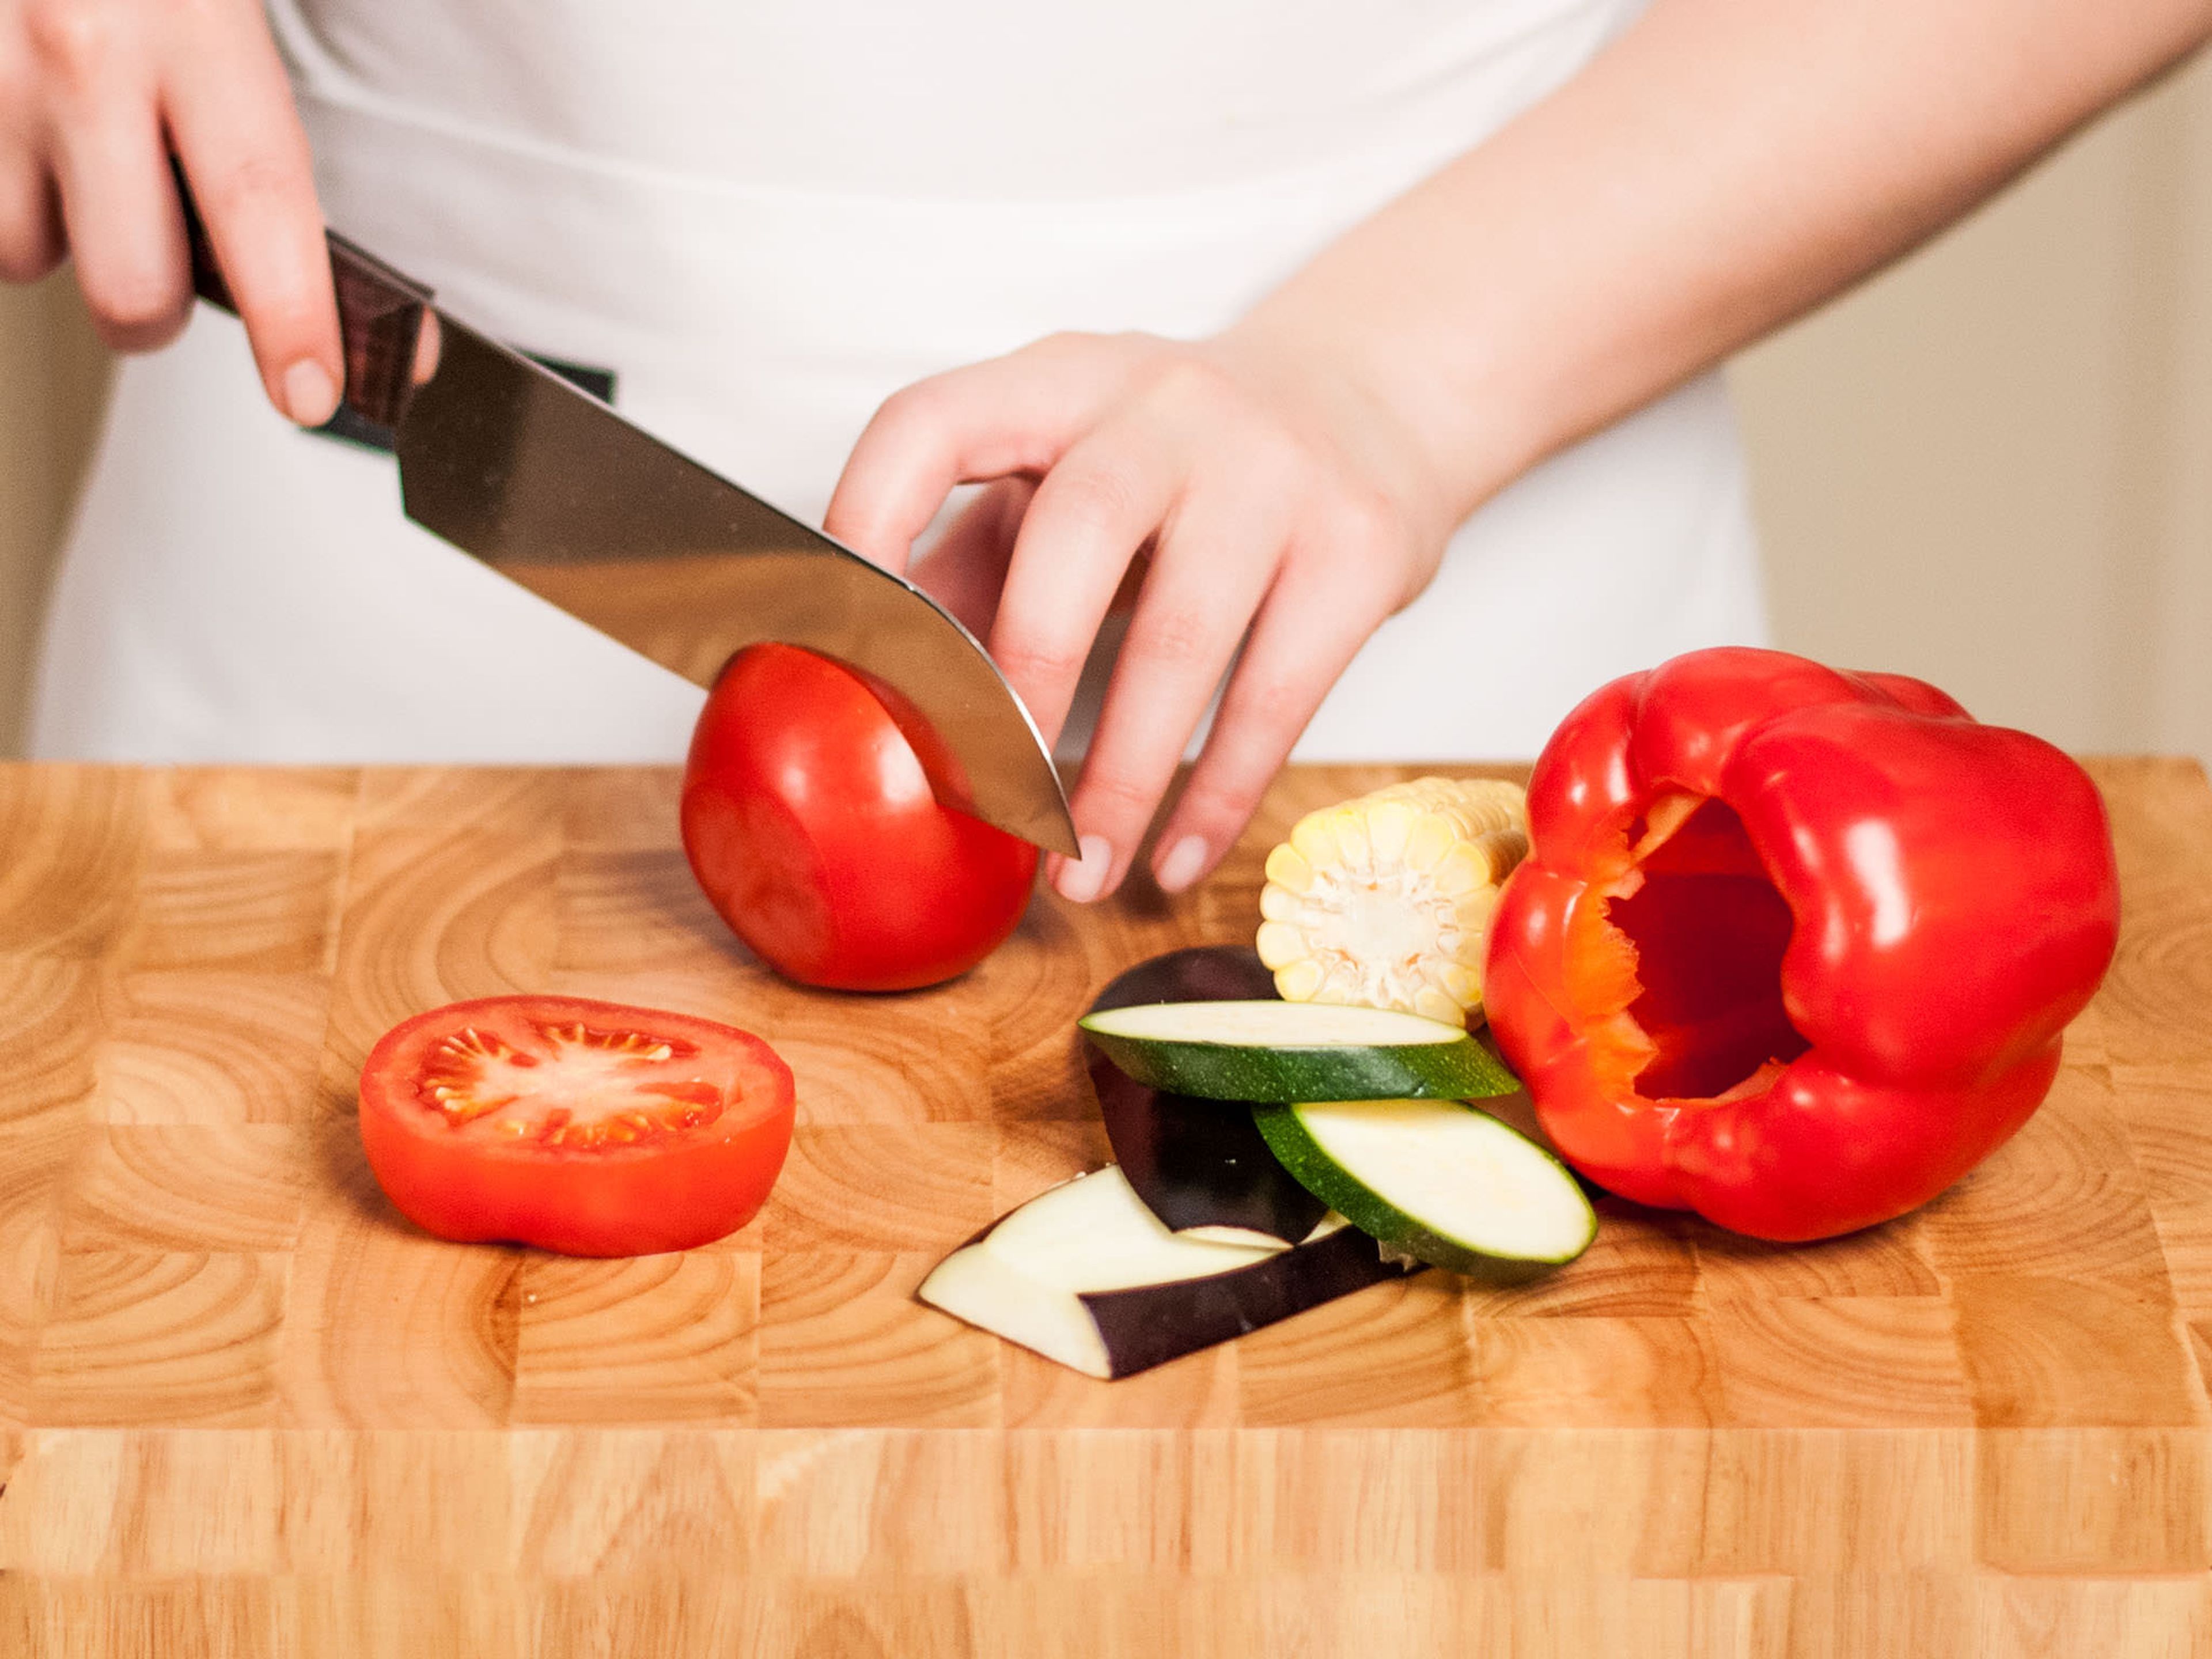 Den Deckel der Paprika abschneiden und würfeln. Das Kerngehäuse entfernen. Tomate, Zucchini und Aubergine in dicke Scheiben schneiden und jeweils den Strunk entfernen.